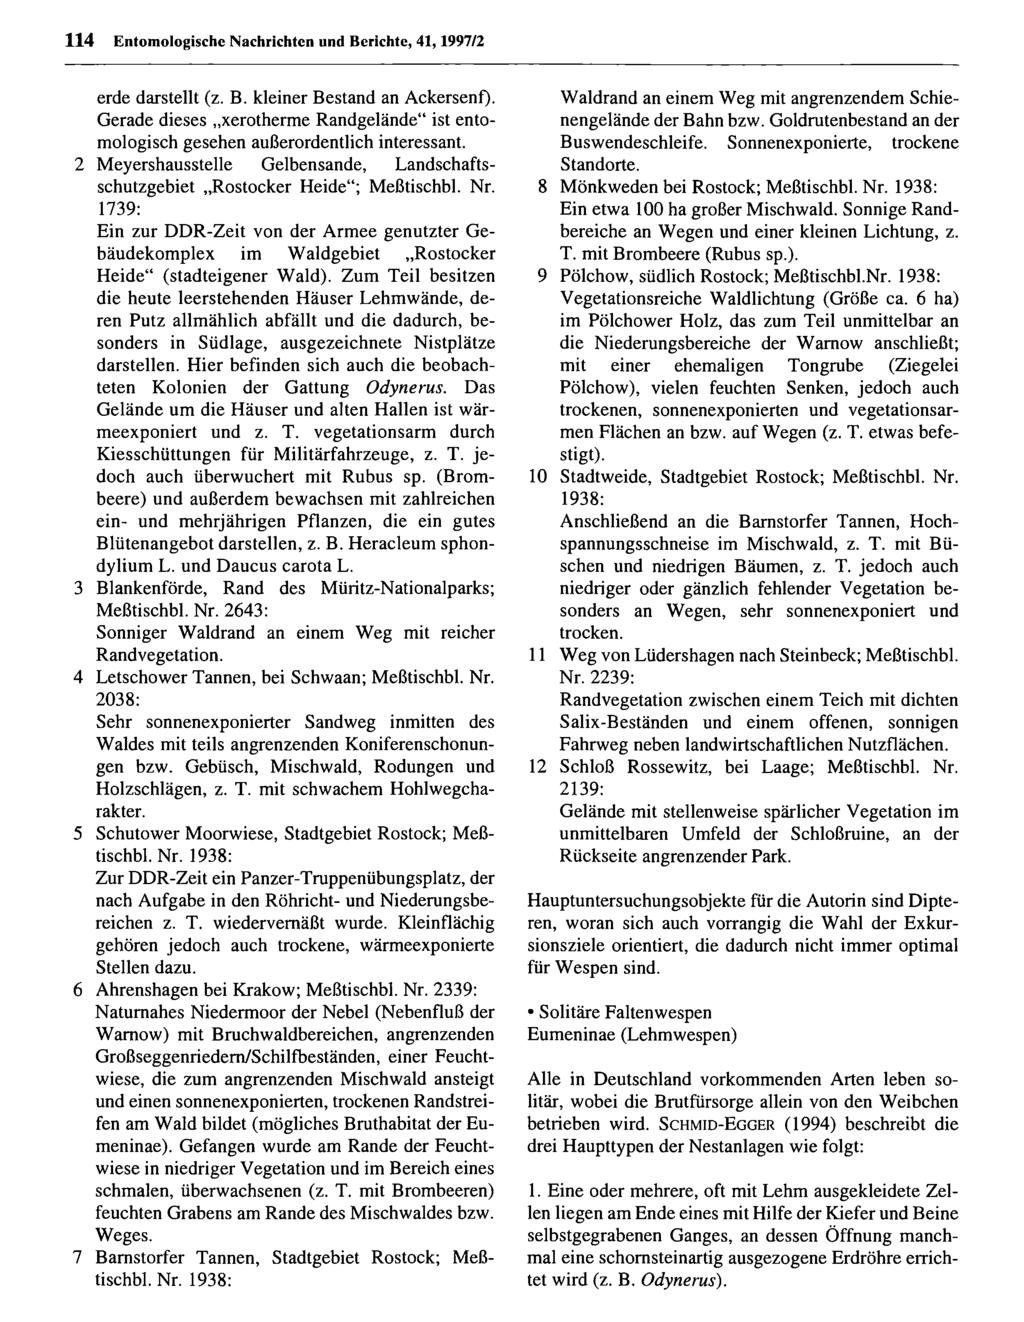 114 Entom ologischc Nachrichtcn Entomologische und Berichte, Nachrichten 41,1997/2 und Berichte; download unter www.biologiezentrum.at erde darstellt (z. B. kleiner Bestand an Ackersenf).